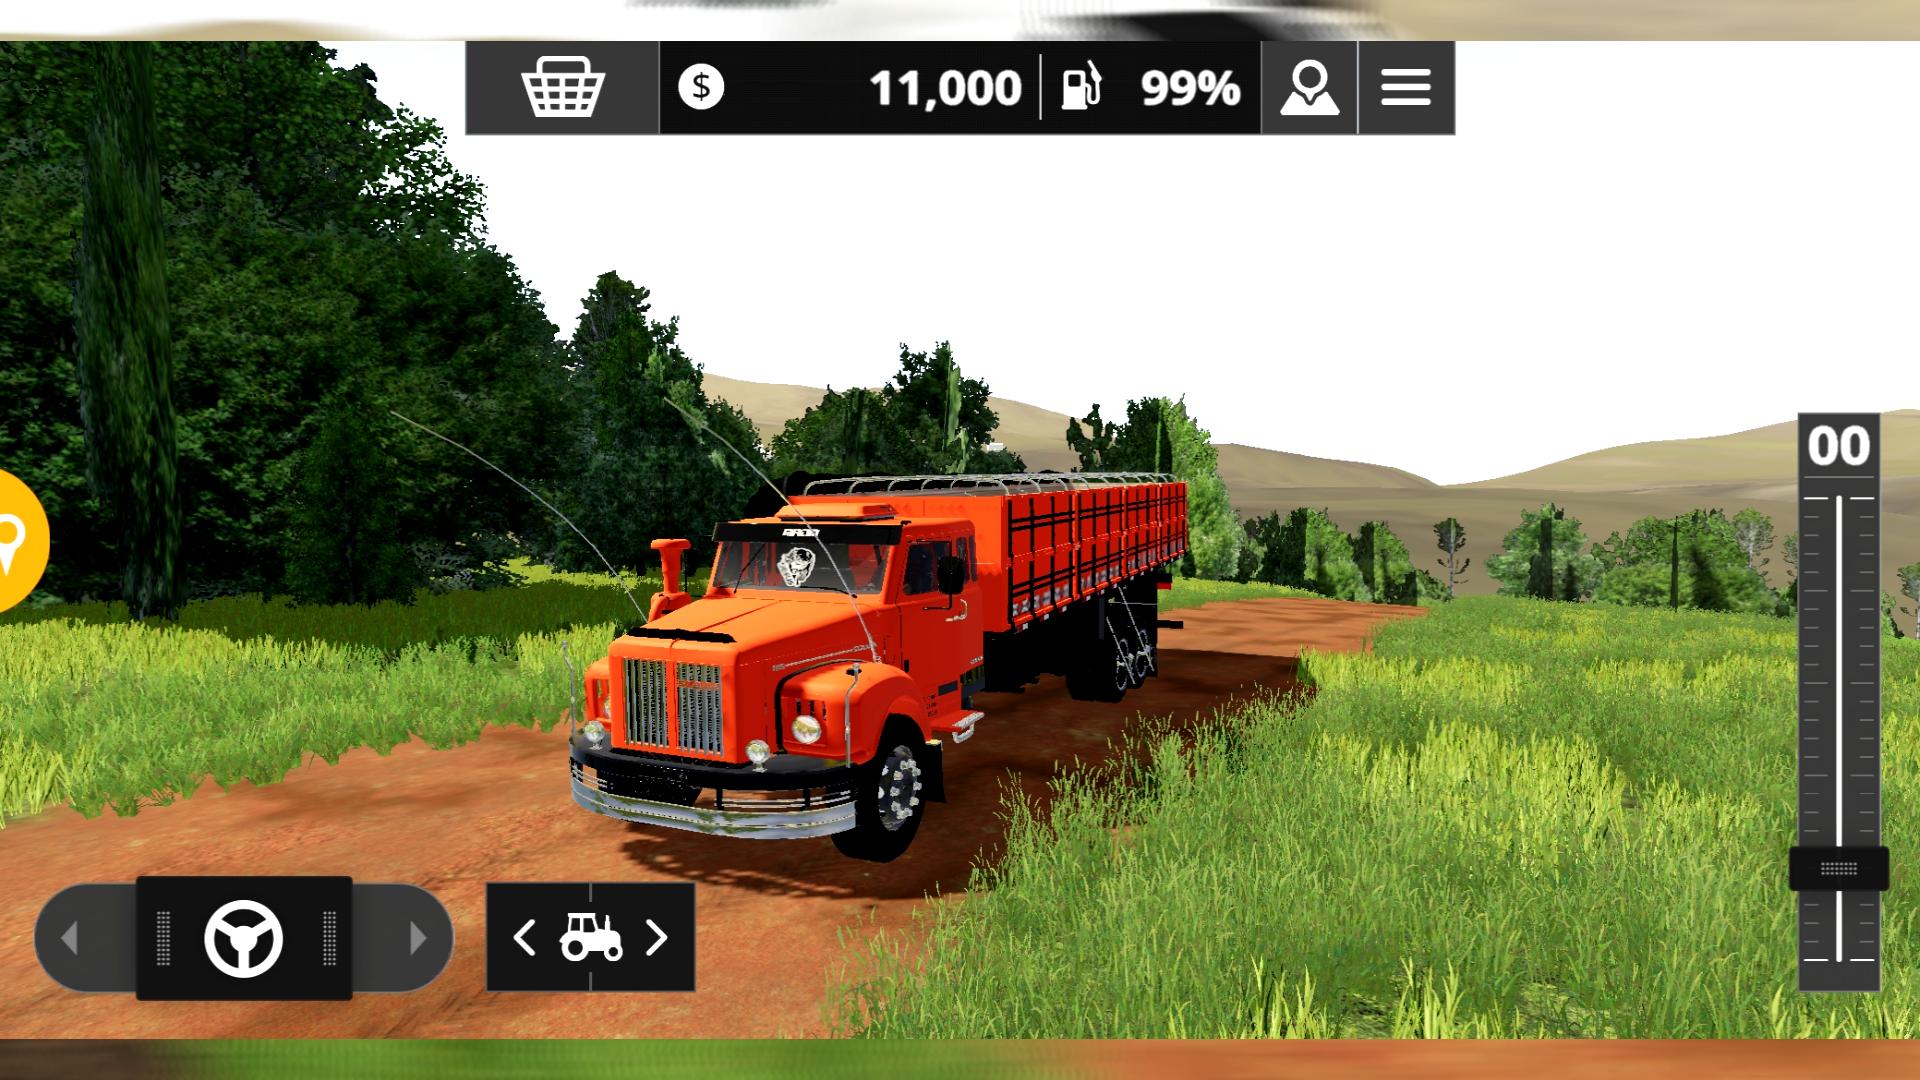 Jogo trator farming simulator 2020 mods android